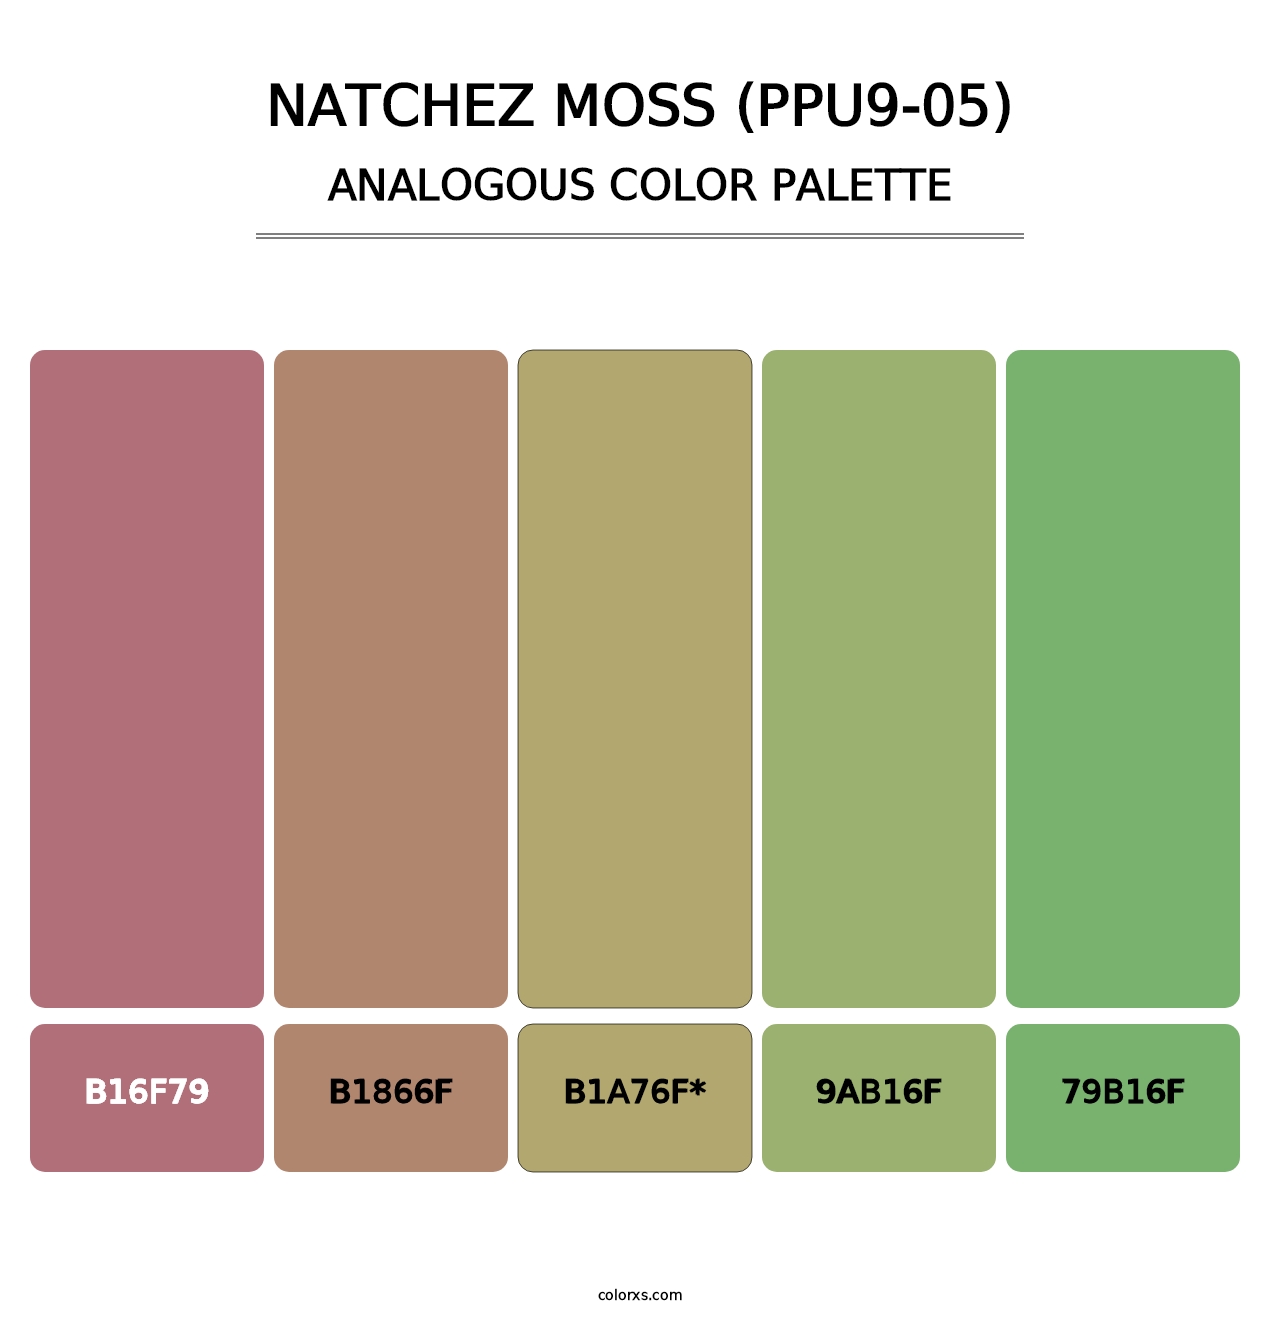 Natchez Moss (PPU9-05) - Analogous Color Palette